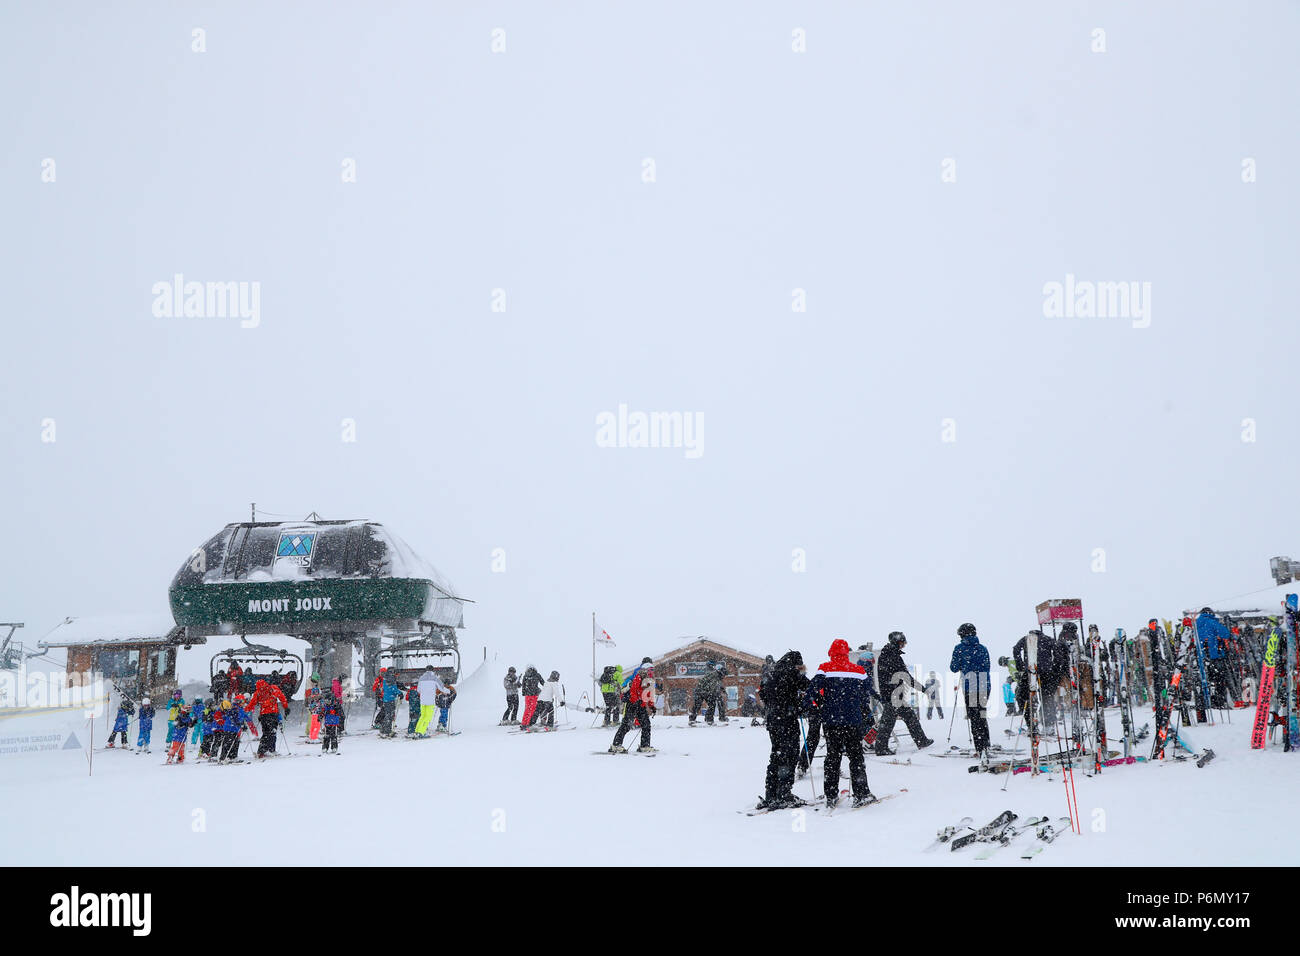 Alpes françaises. Massif du Mont-Blanc. Une piste de ski. Saint-Gervais. La France. Banque D'Images